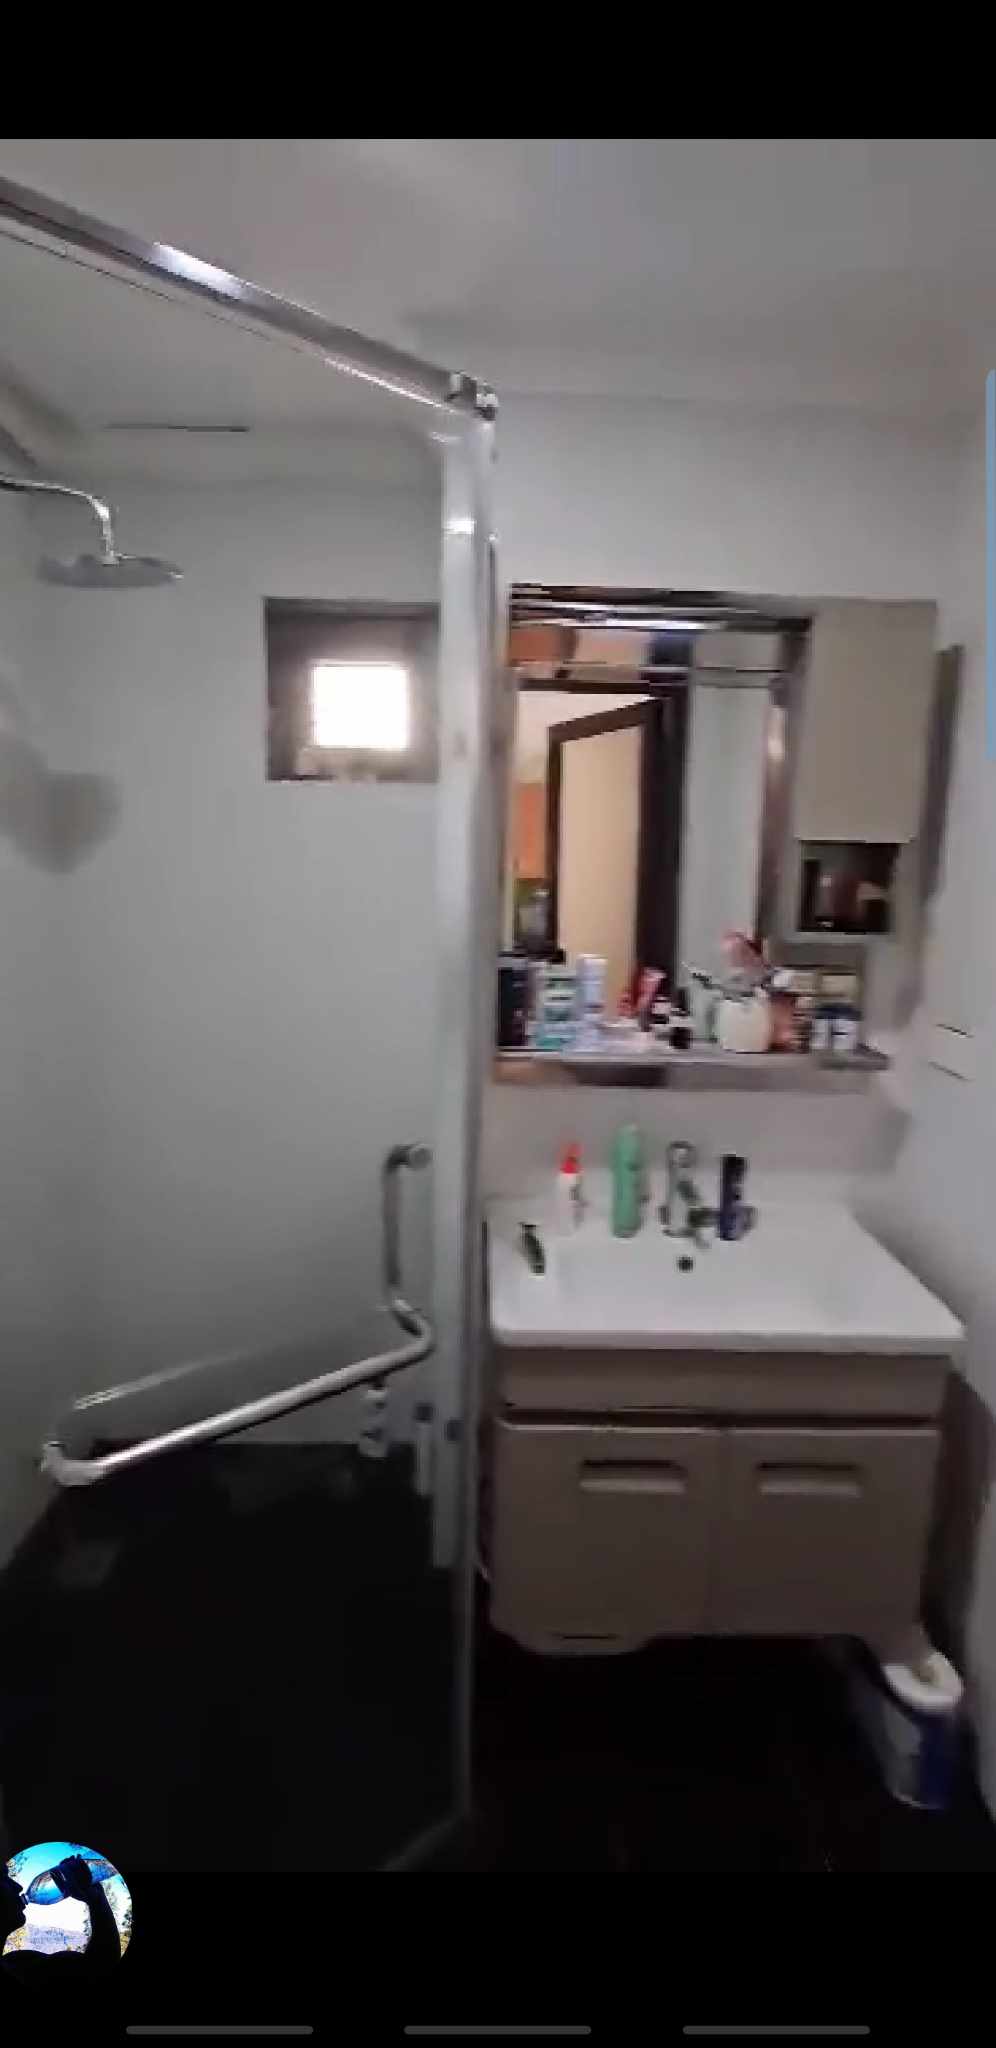 Bathroom deep cleaning